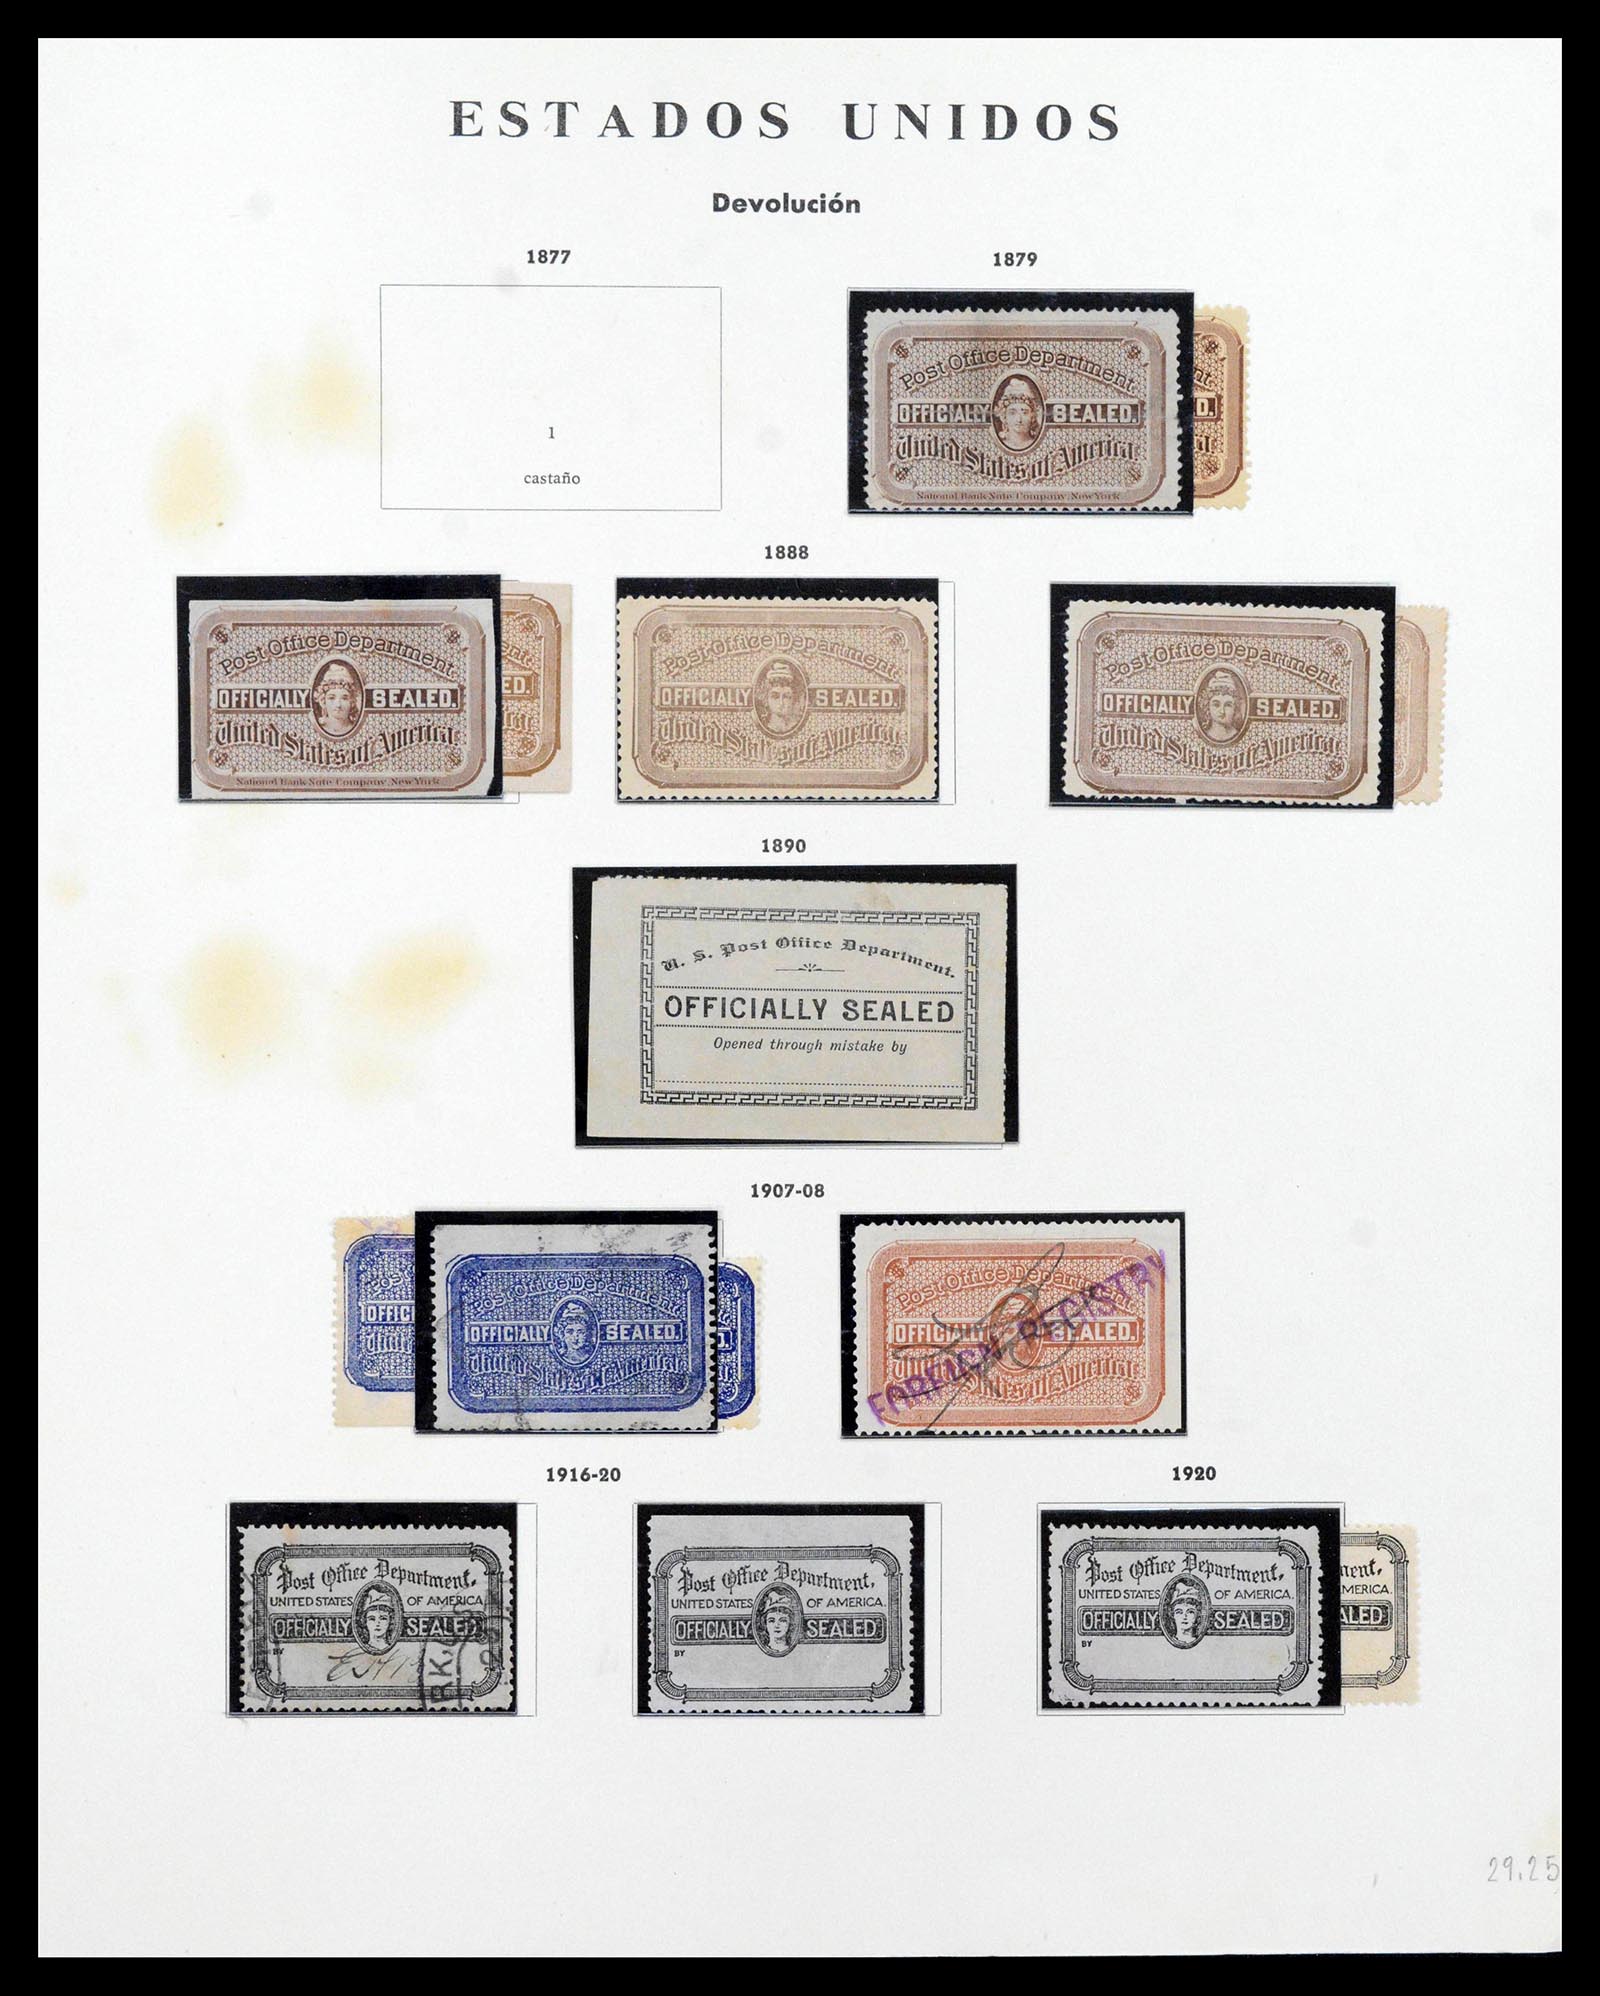 39190 0088 - Stamp collection 39190 USA 1851-1975.